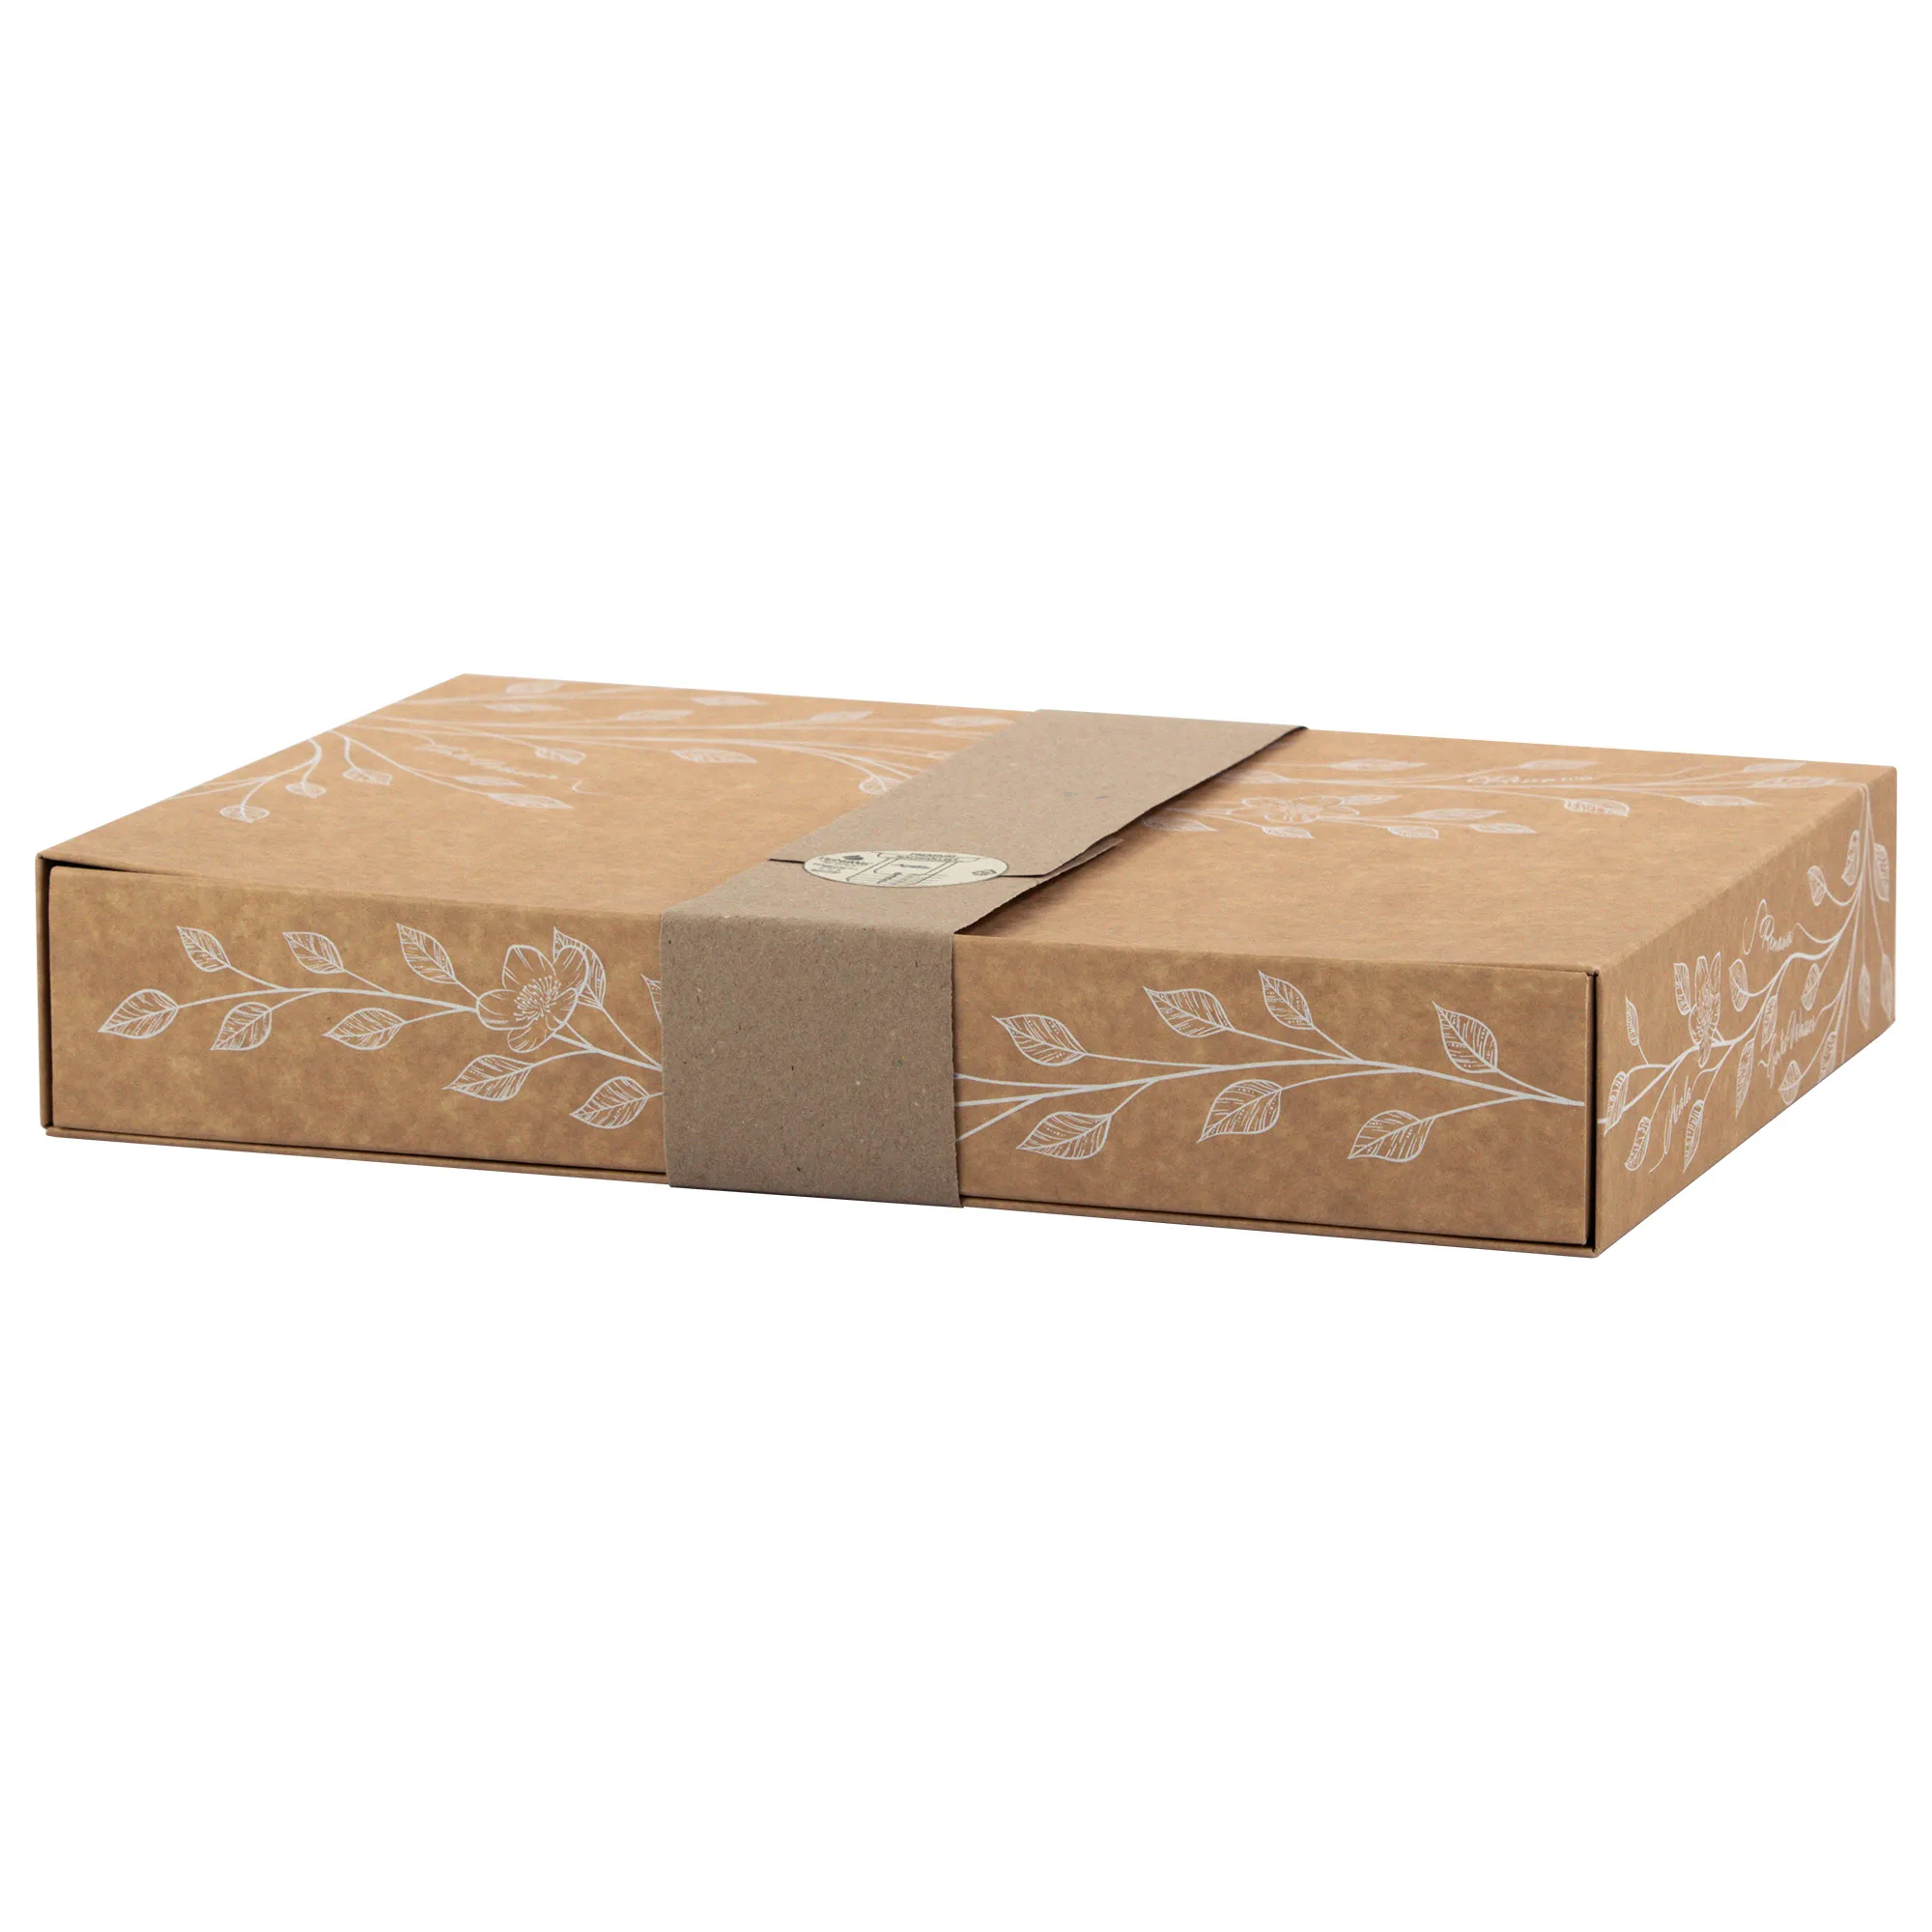 Man sieht die Verpackung für die ReNaWa Nachfüll-Komponenten für 1 Jahr. Der Karton ist Naturbraun, bedruckt mit weißen Blätterranken und Infos zum Inhalt der Schubladenbox. Um den Karton herum ist ein braunes Band mit einem runden Aufkleber.